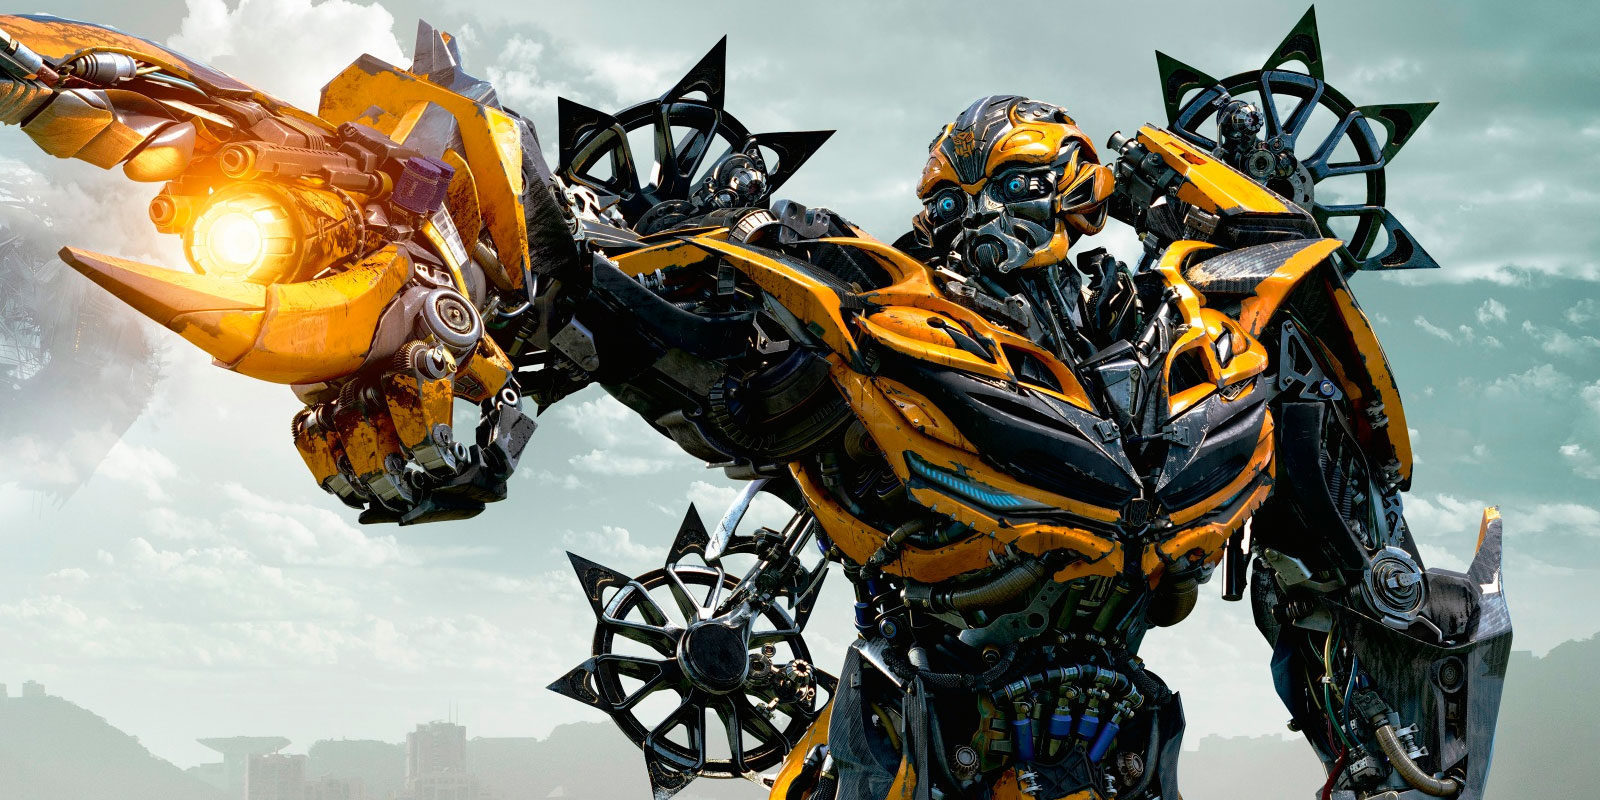 El Spin Off De Transformers Con Bumblebee Ya Tiene Director Zonared